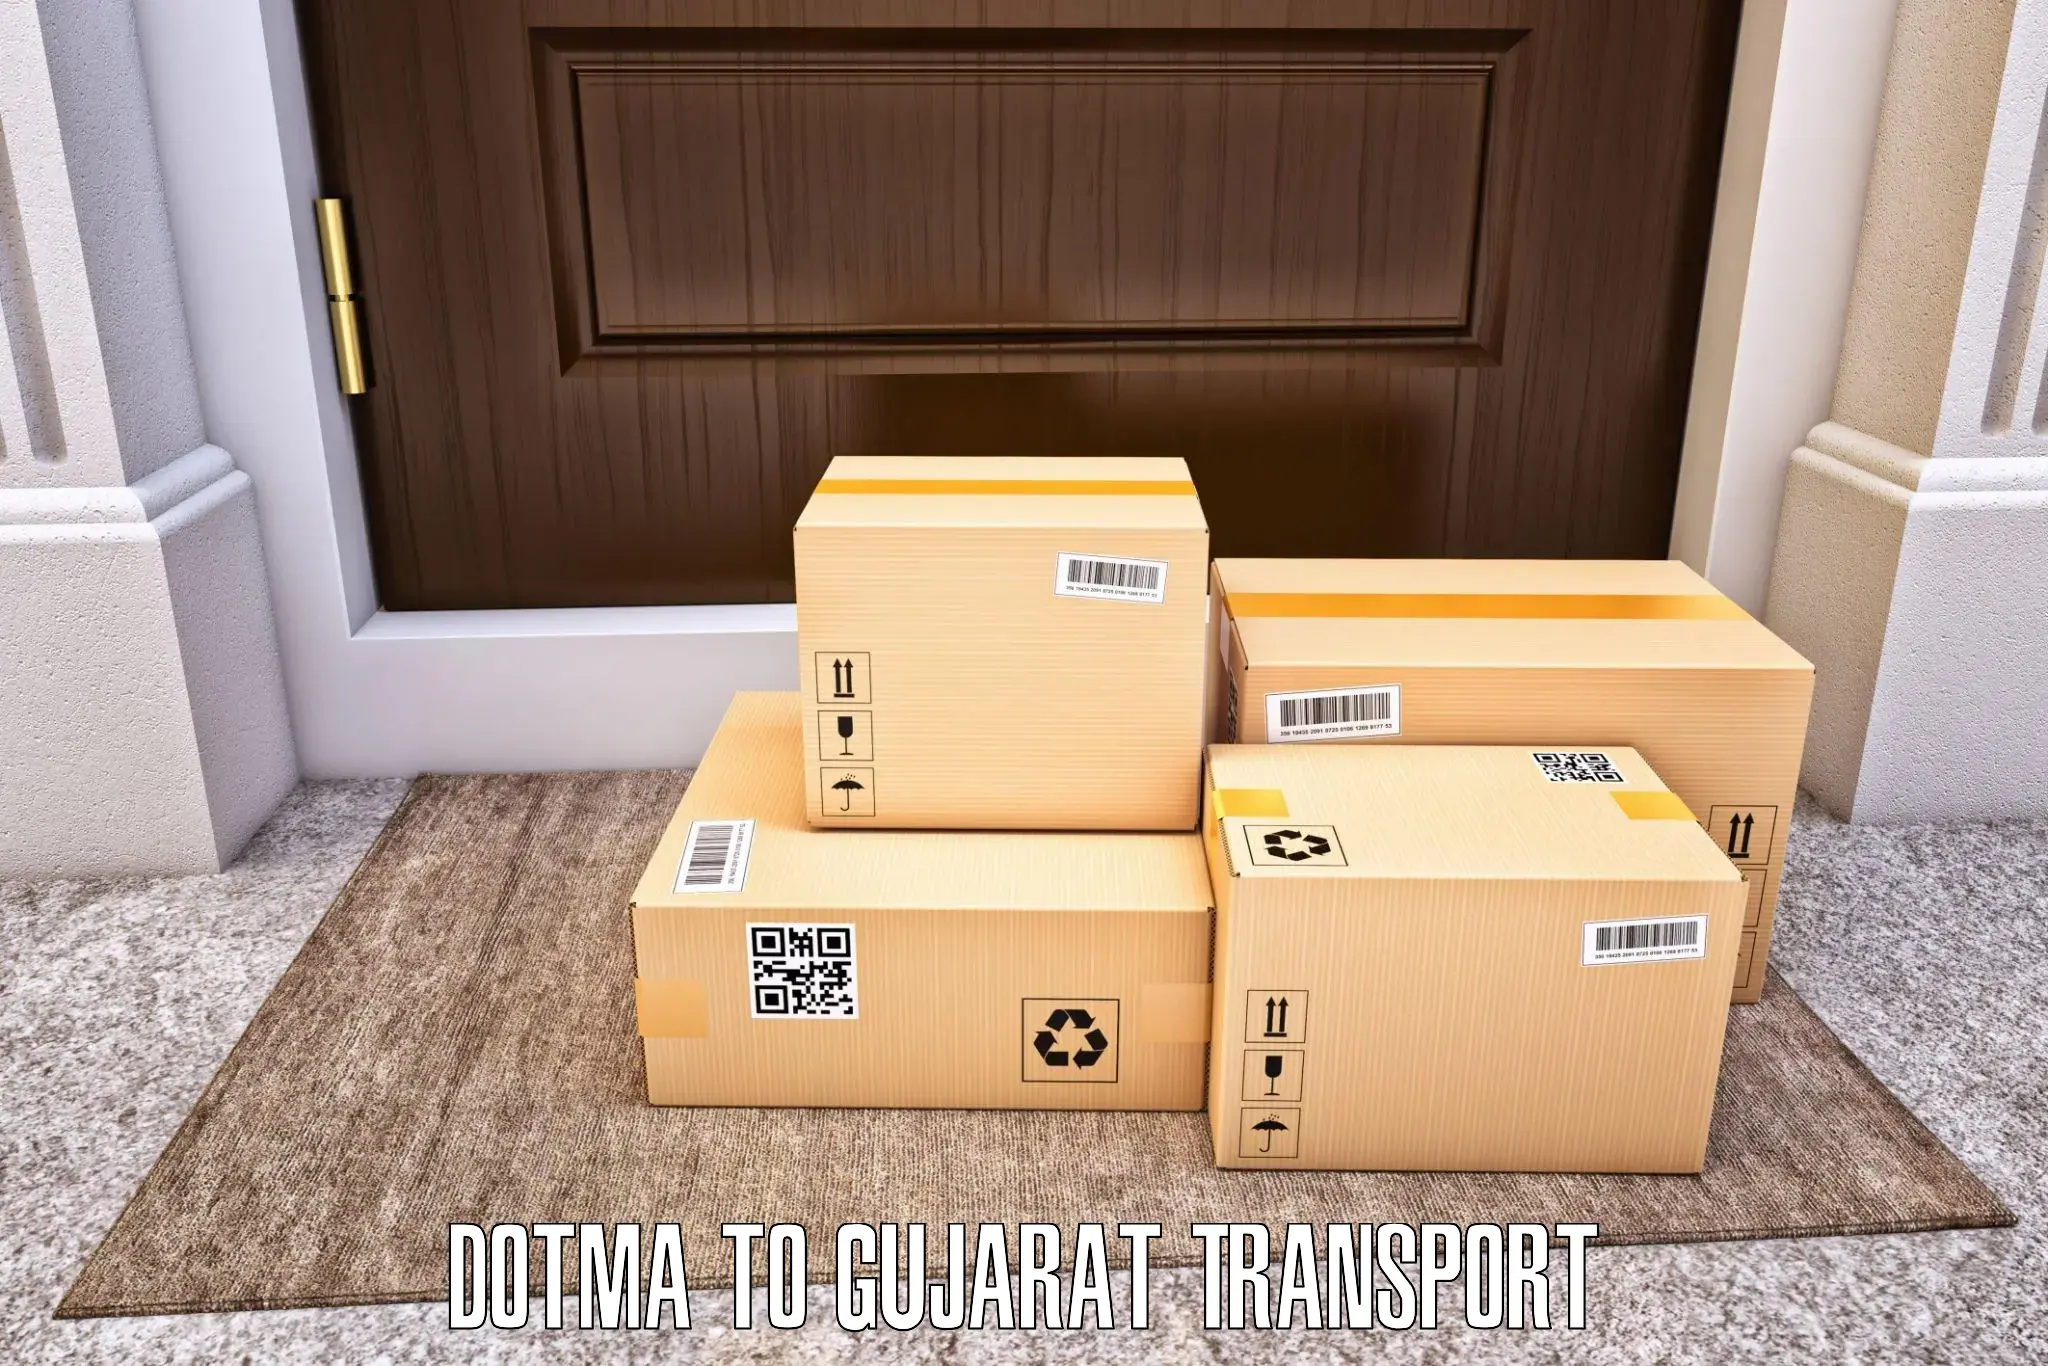 Shipping partner in Dotma to Nakhatrana